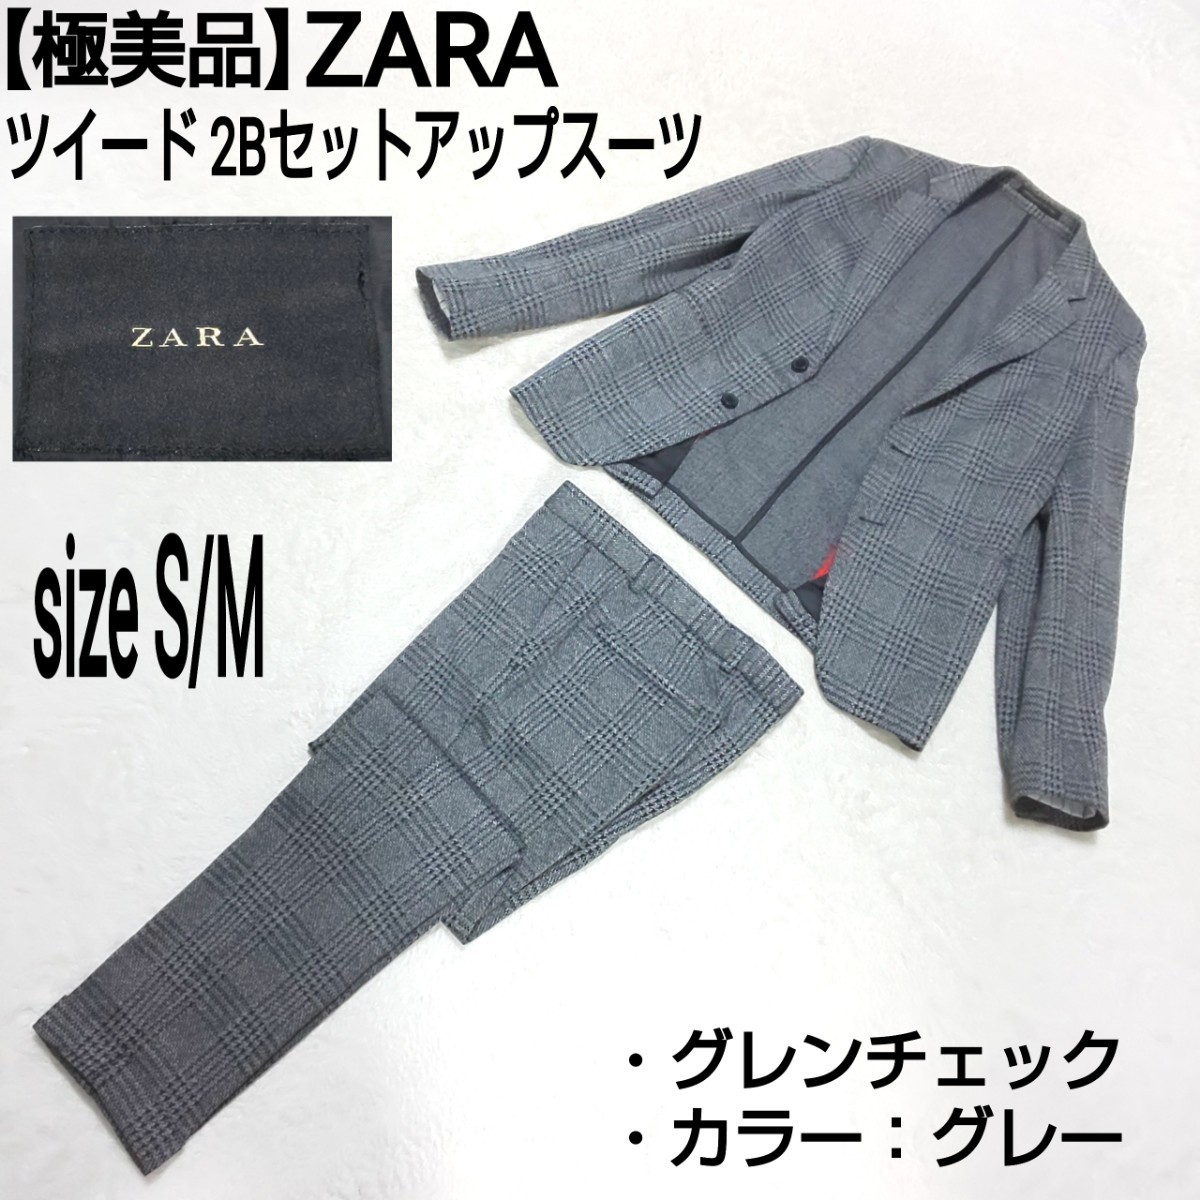 クーポン対象外】 【極美品】ZARA スーツ セットアップ グレー 2つ